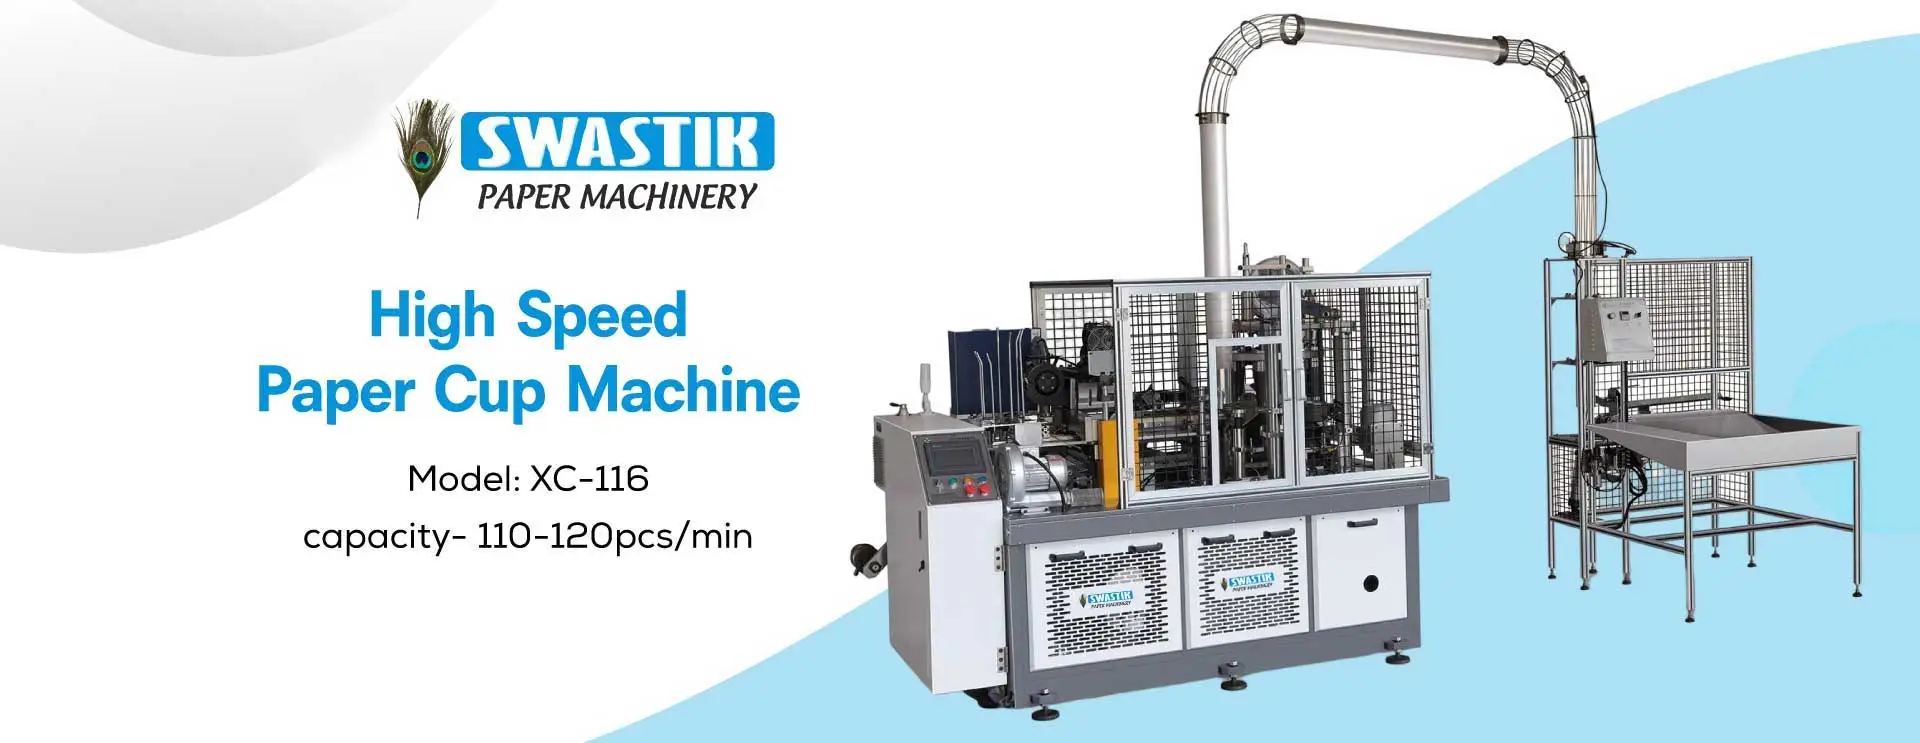 High Speed Paper Cup Machine Manufacturers in Rudrapur